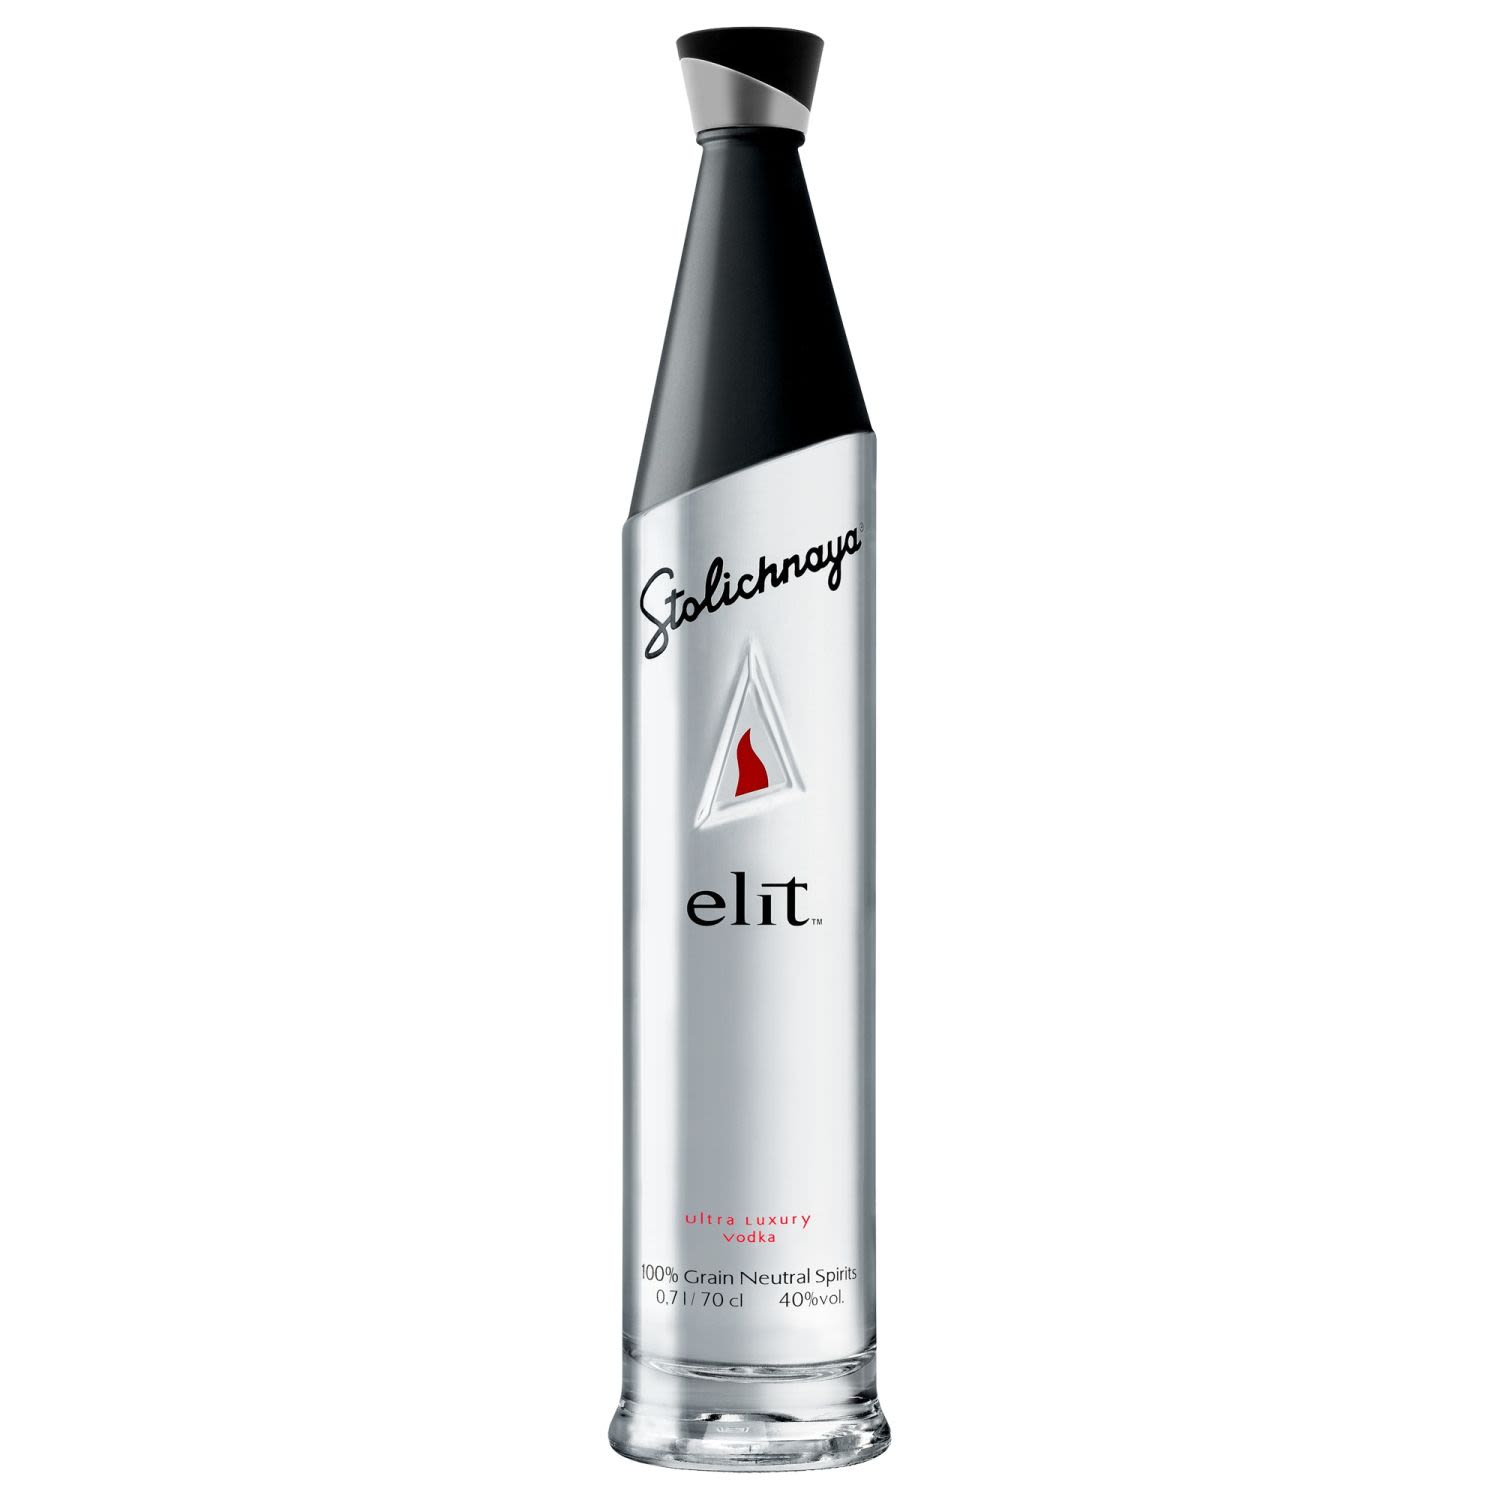 Stolichnaya elit Vodka 700mL Bottle